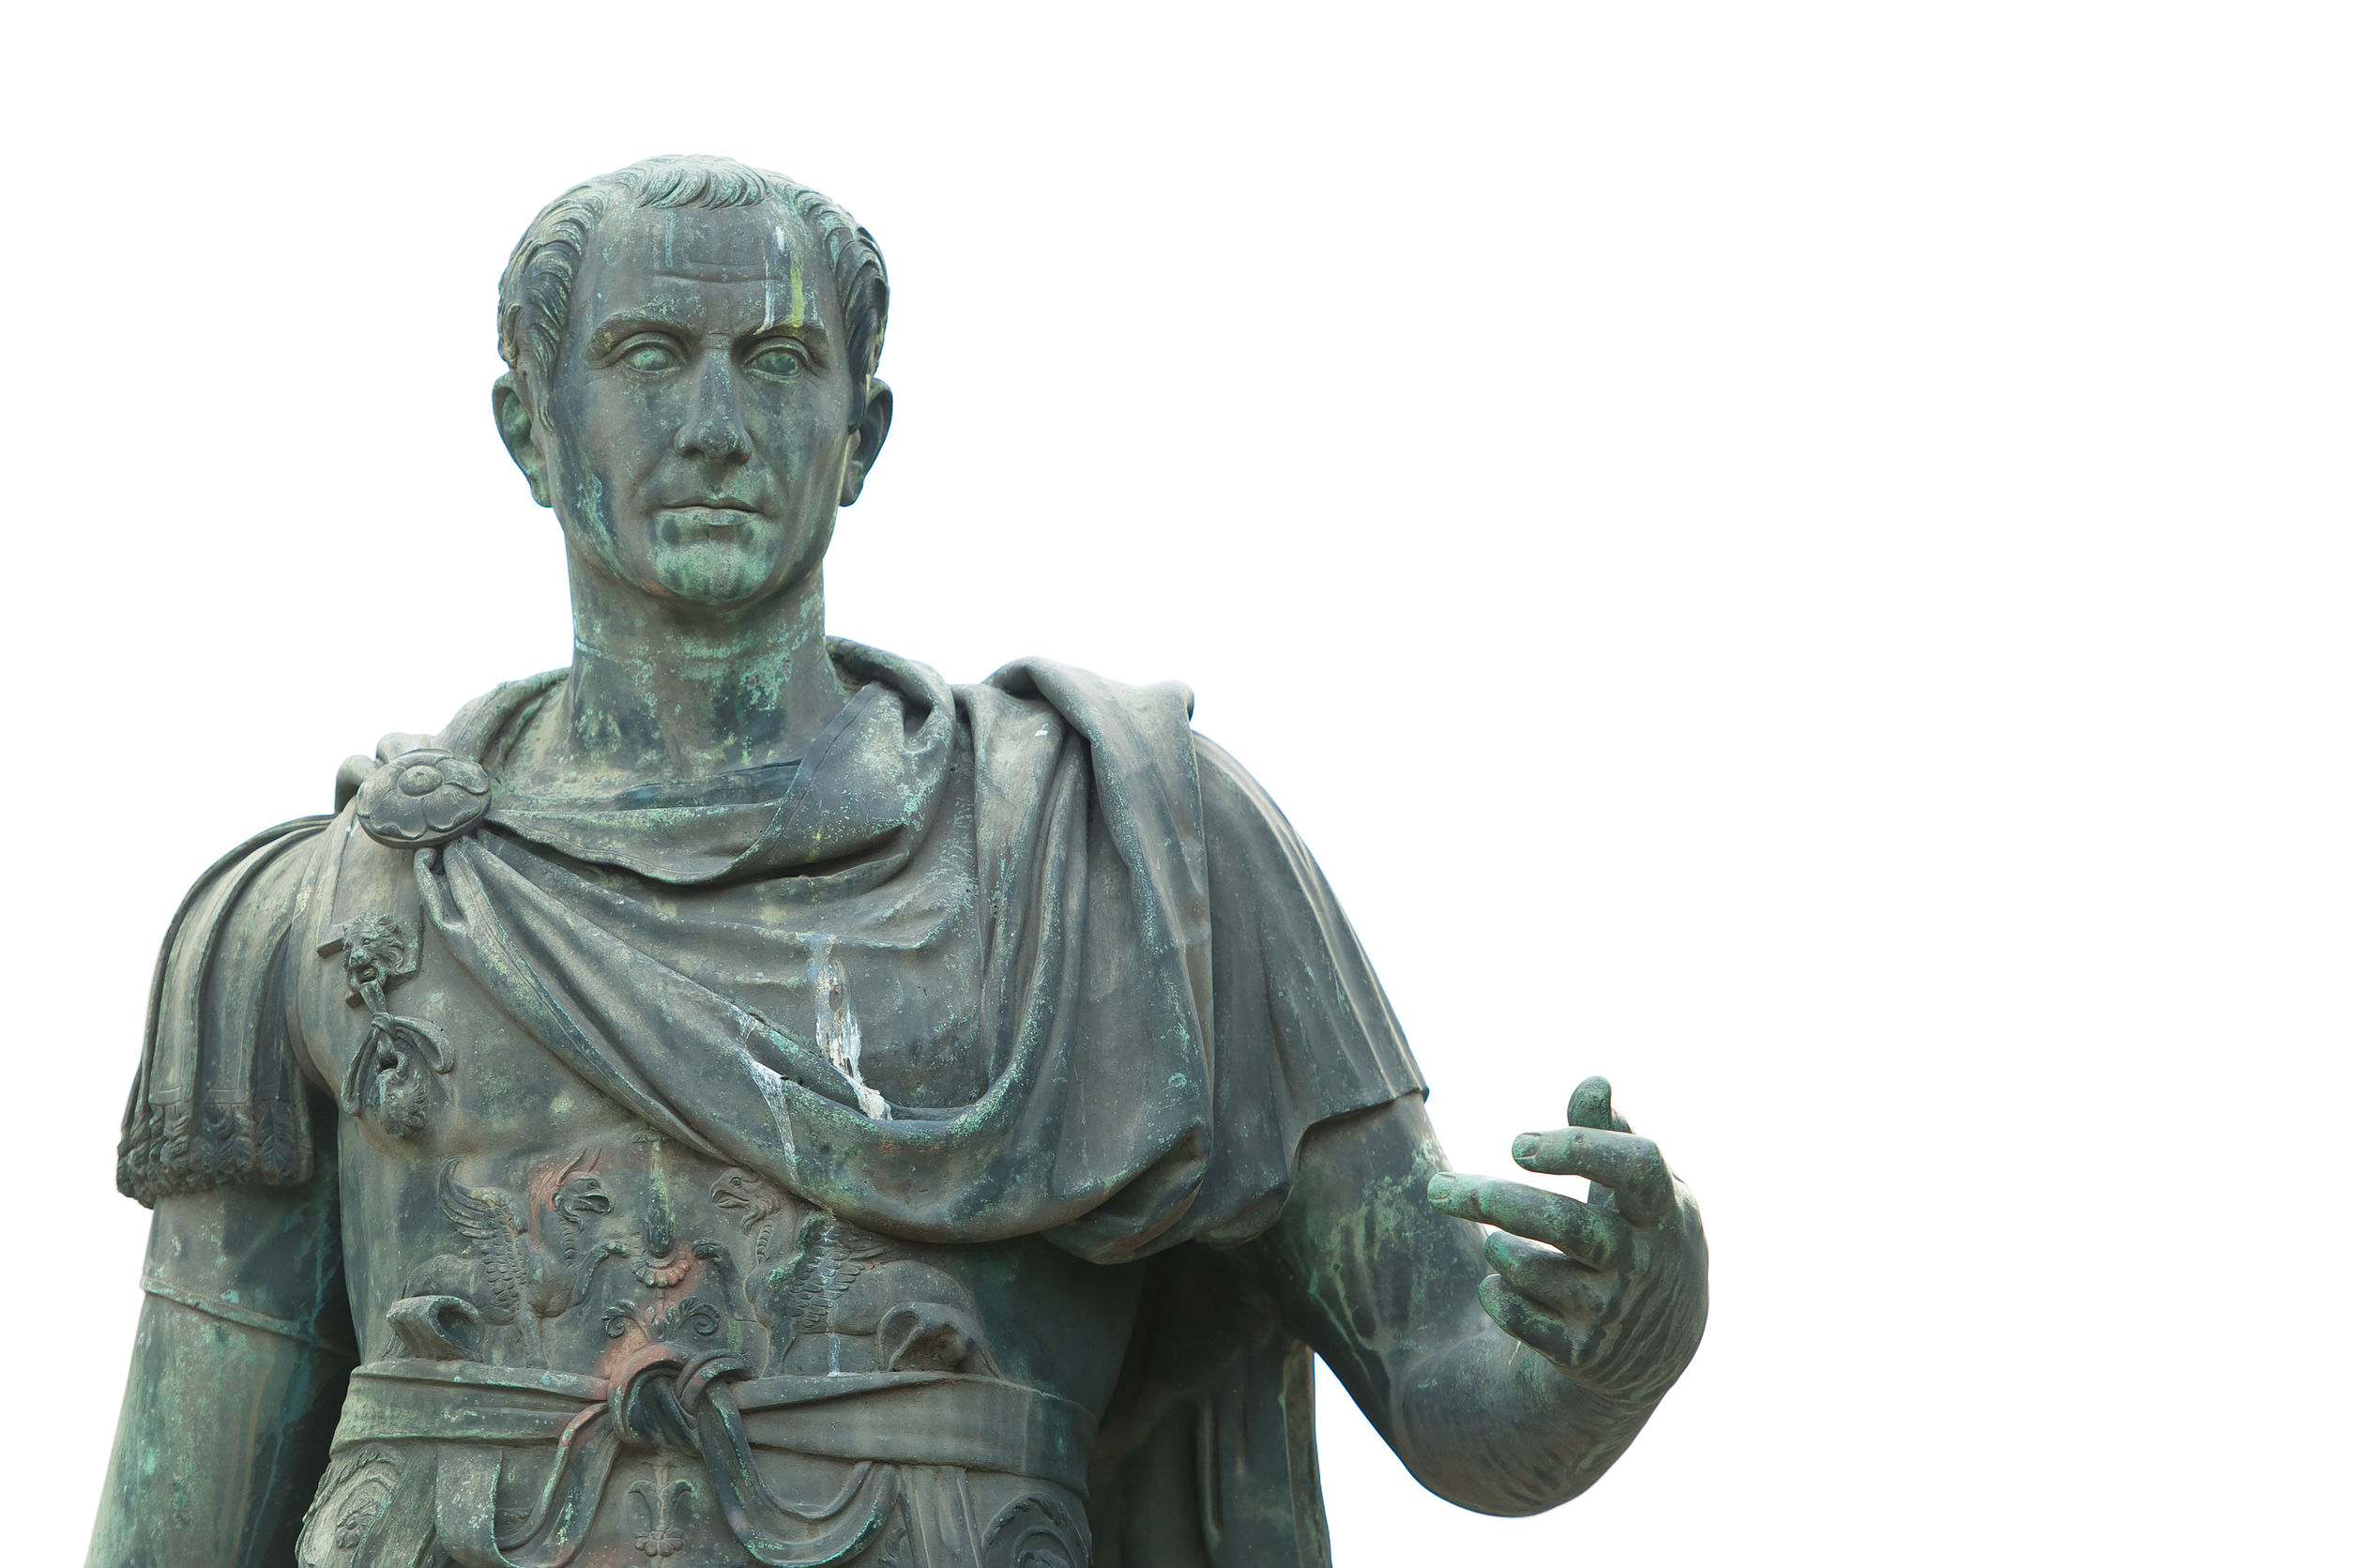 bronze statue of julius caesar